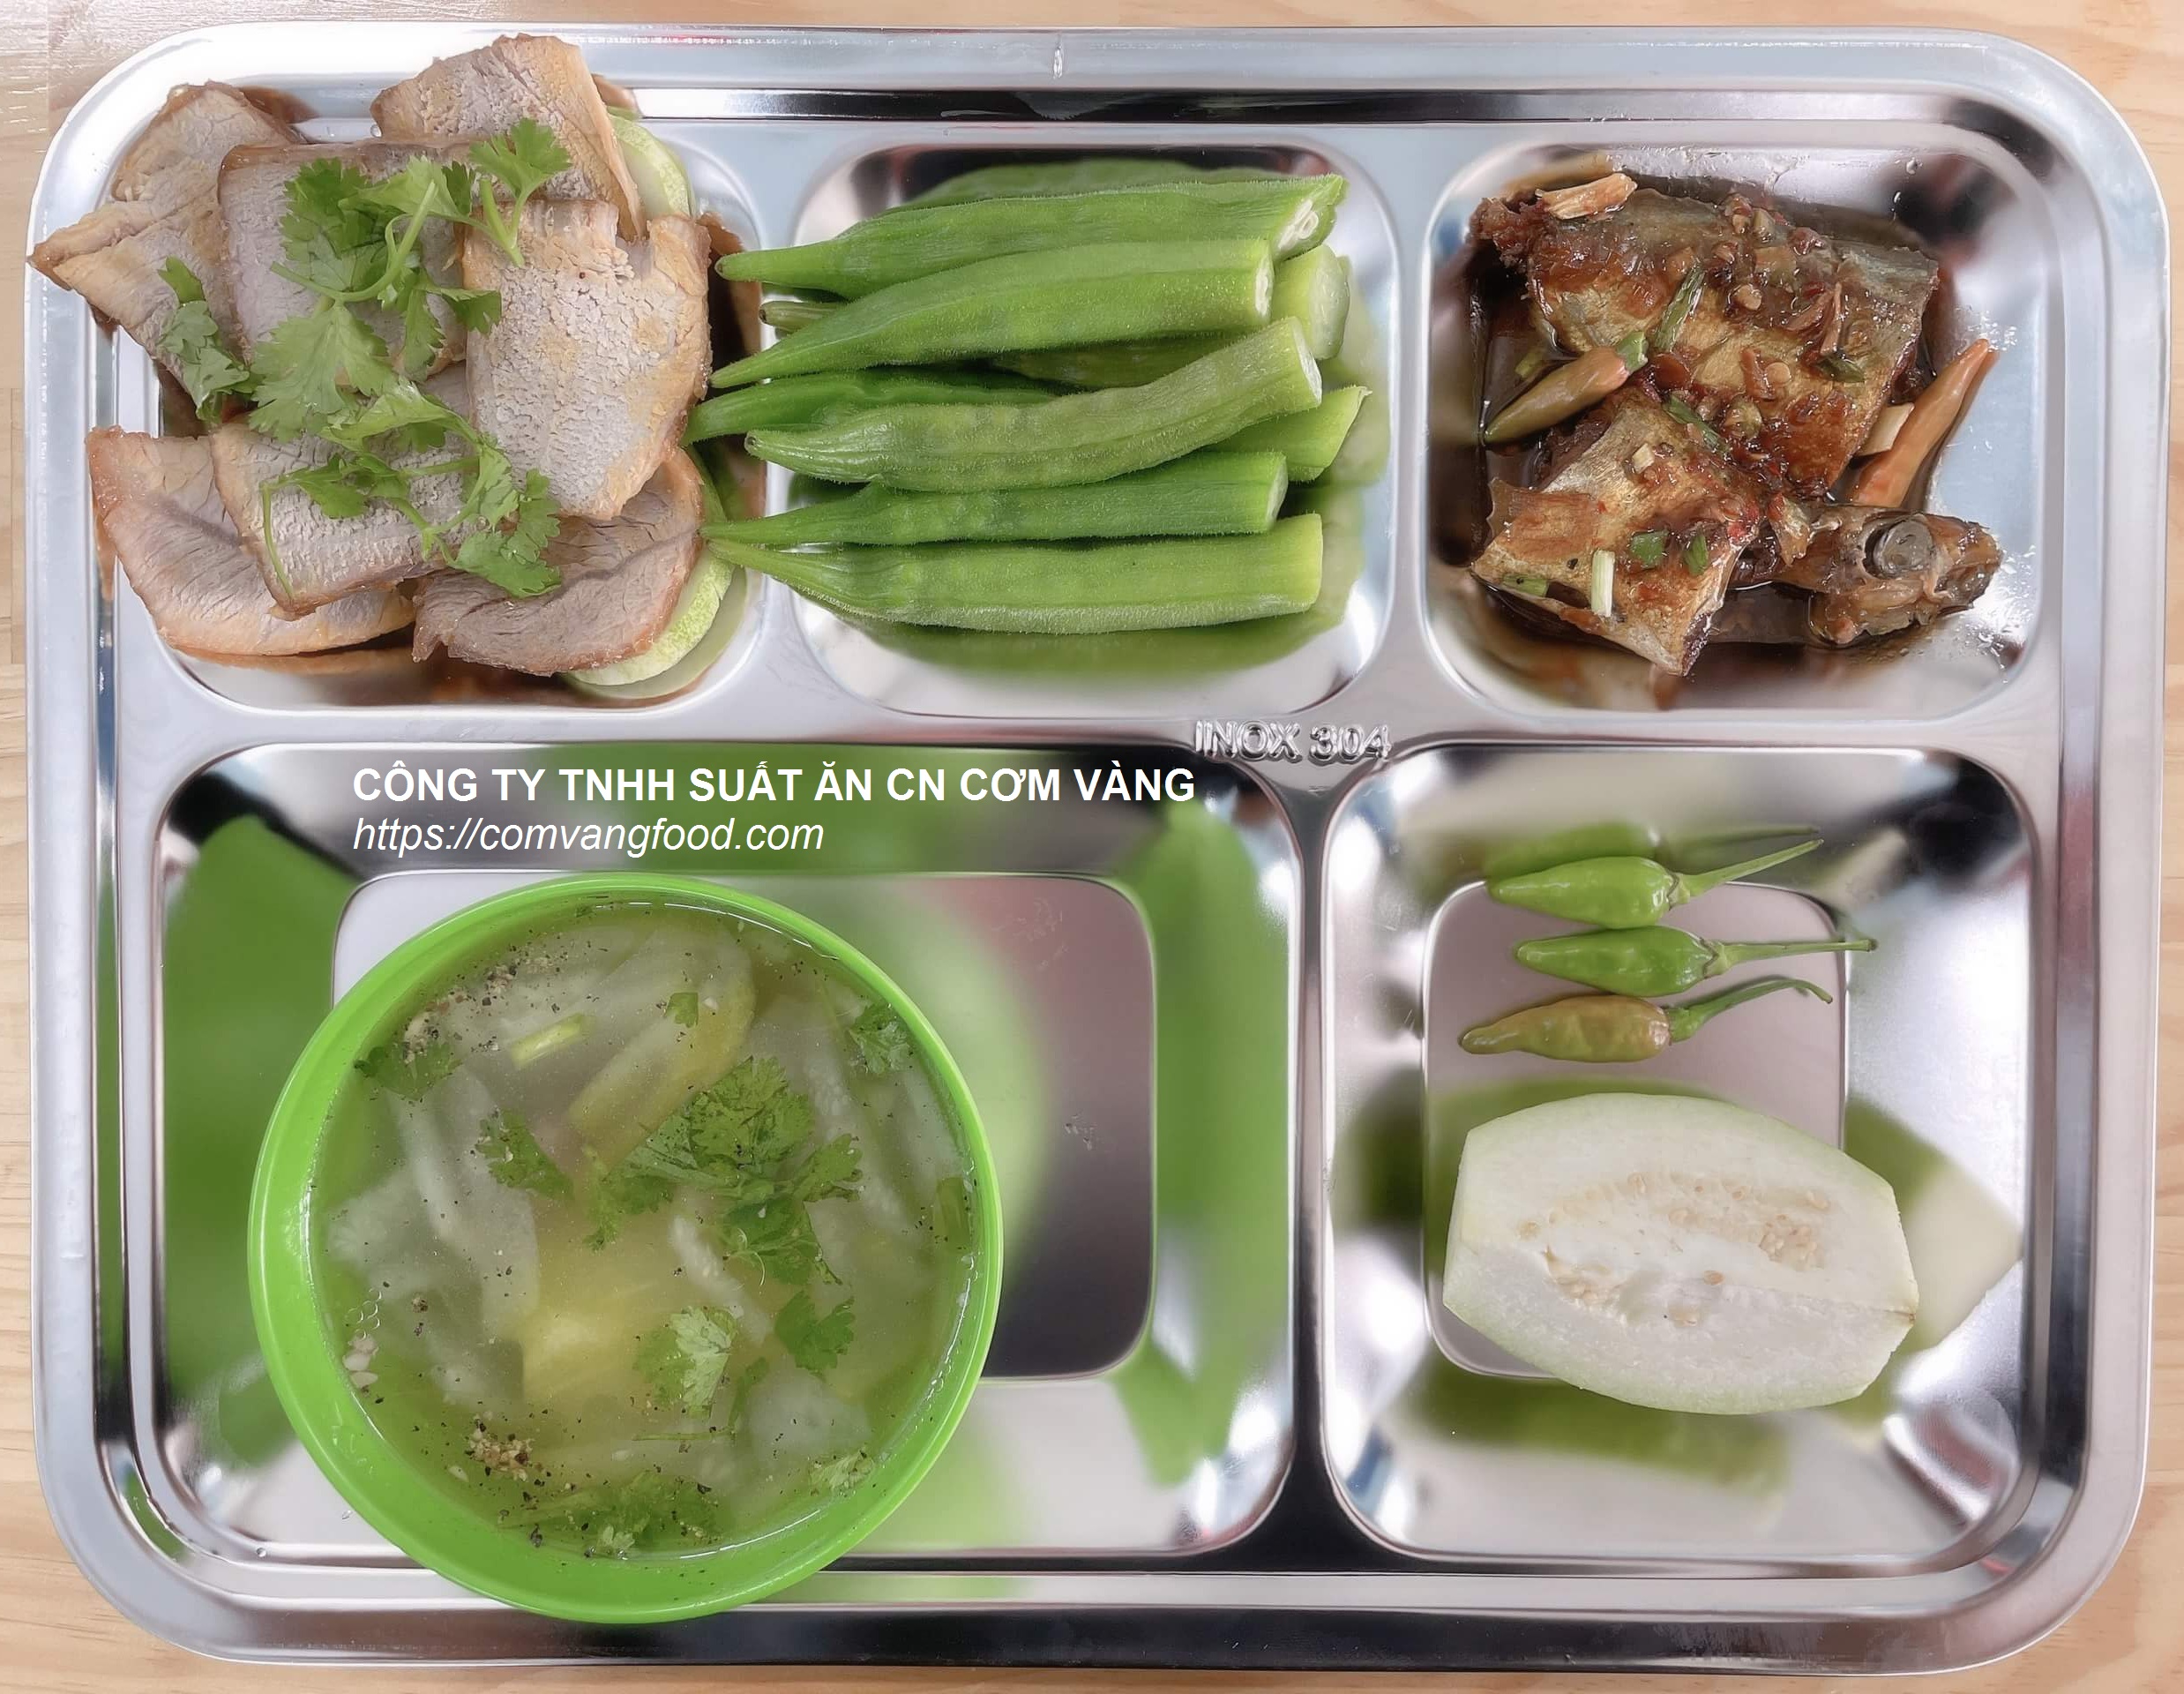 Suất ăn CN 25.000 ở Biên Hòa